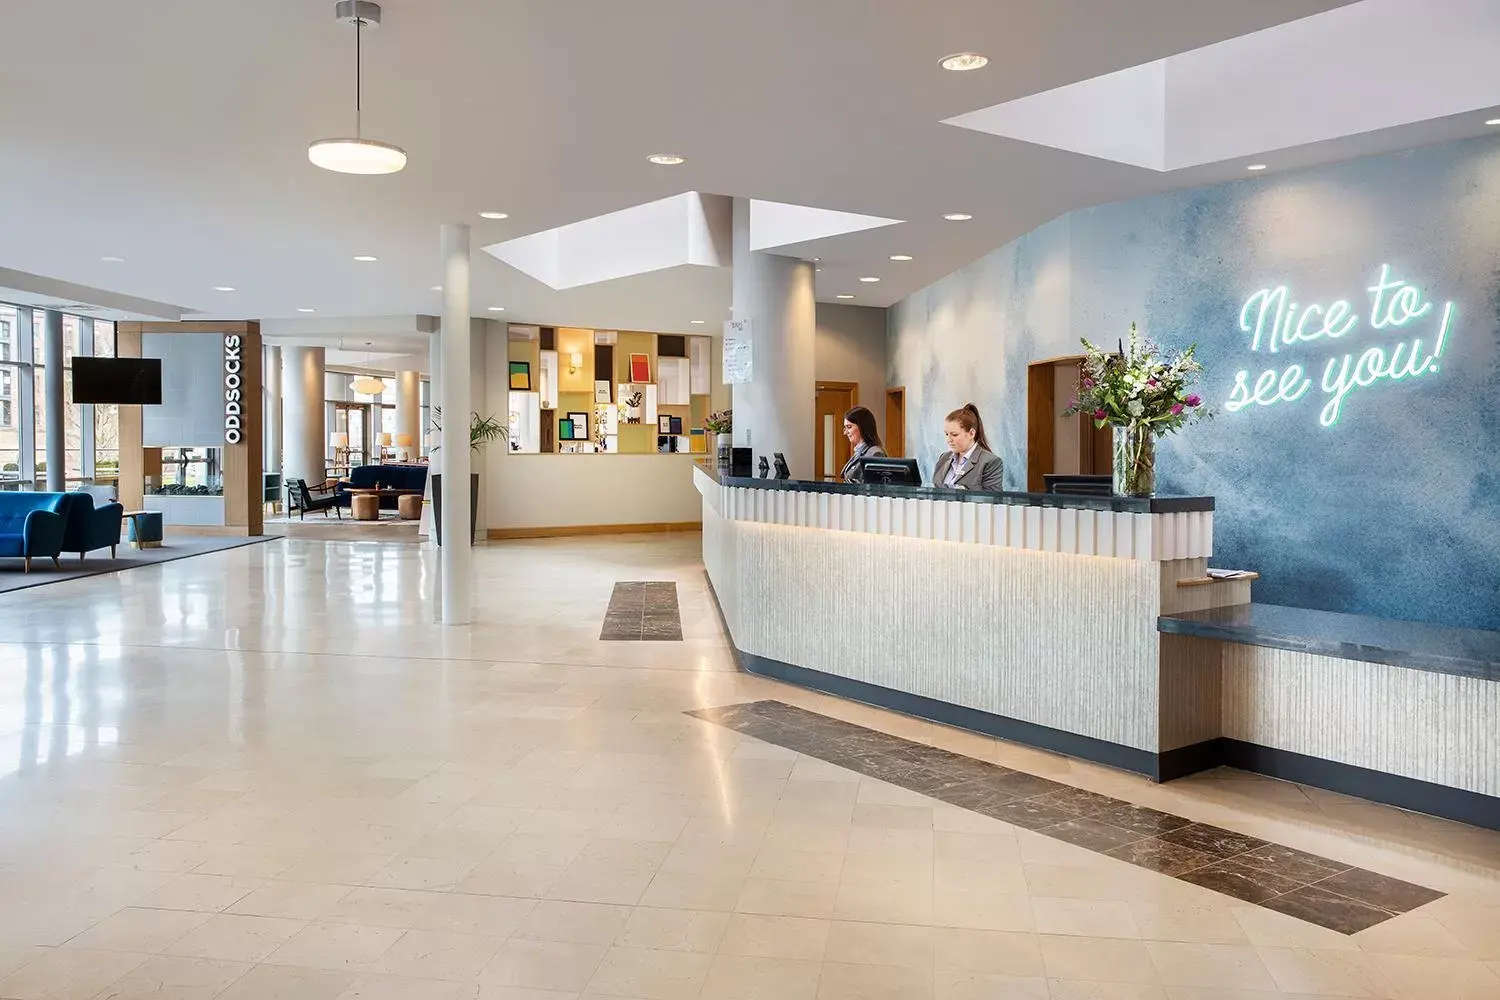 Lobby or reception, Lobby/Reception in Leonardo Hotel Liverpool - formerly Jurys Inn